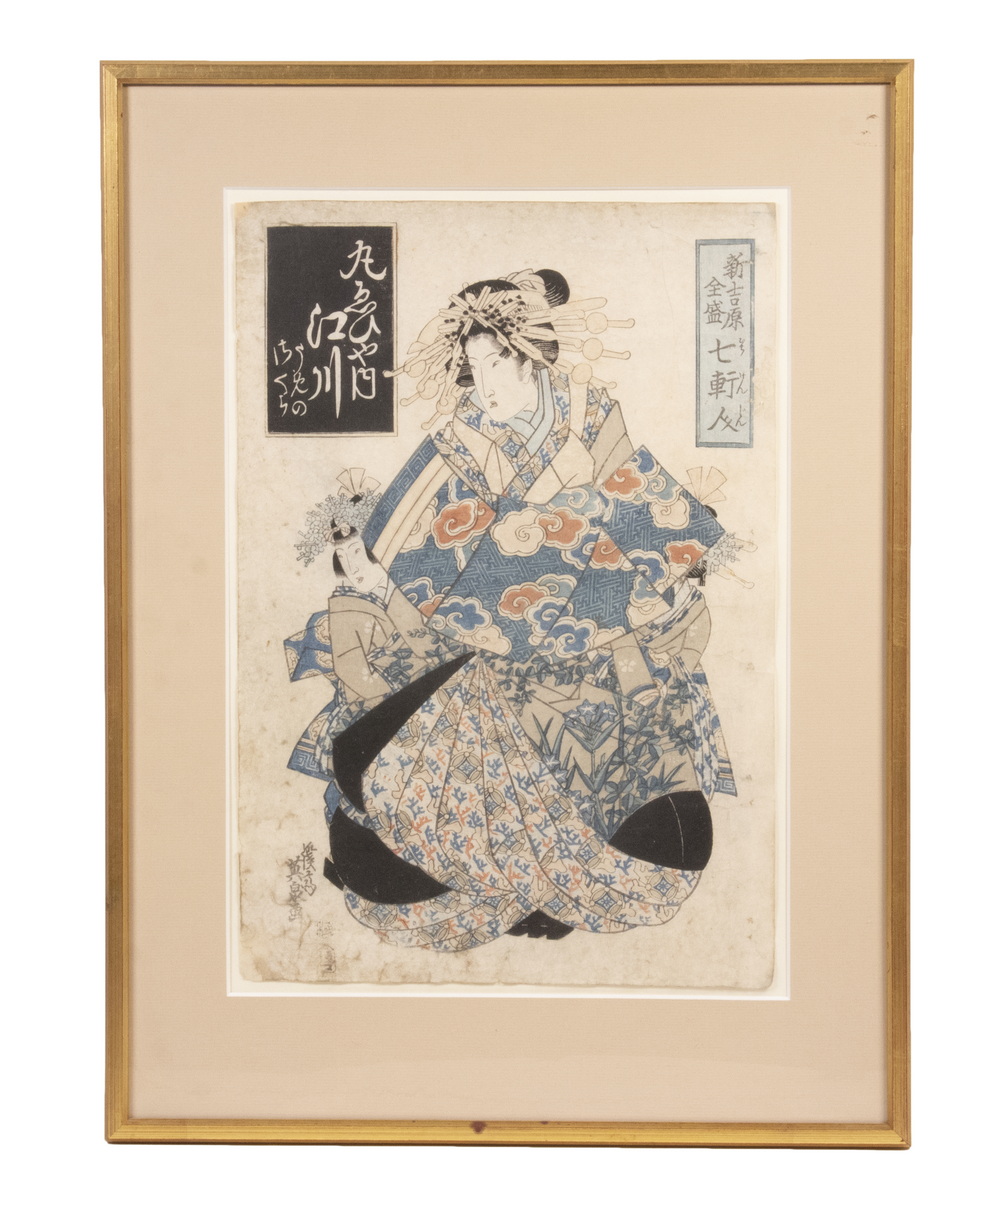 KESAI EISEN (JAPAN, 1790-1848)